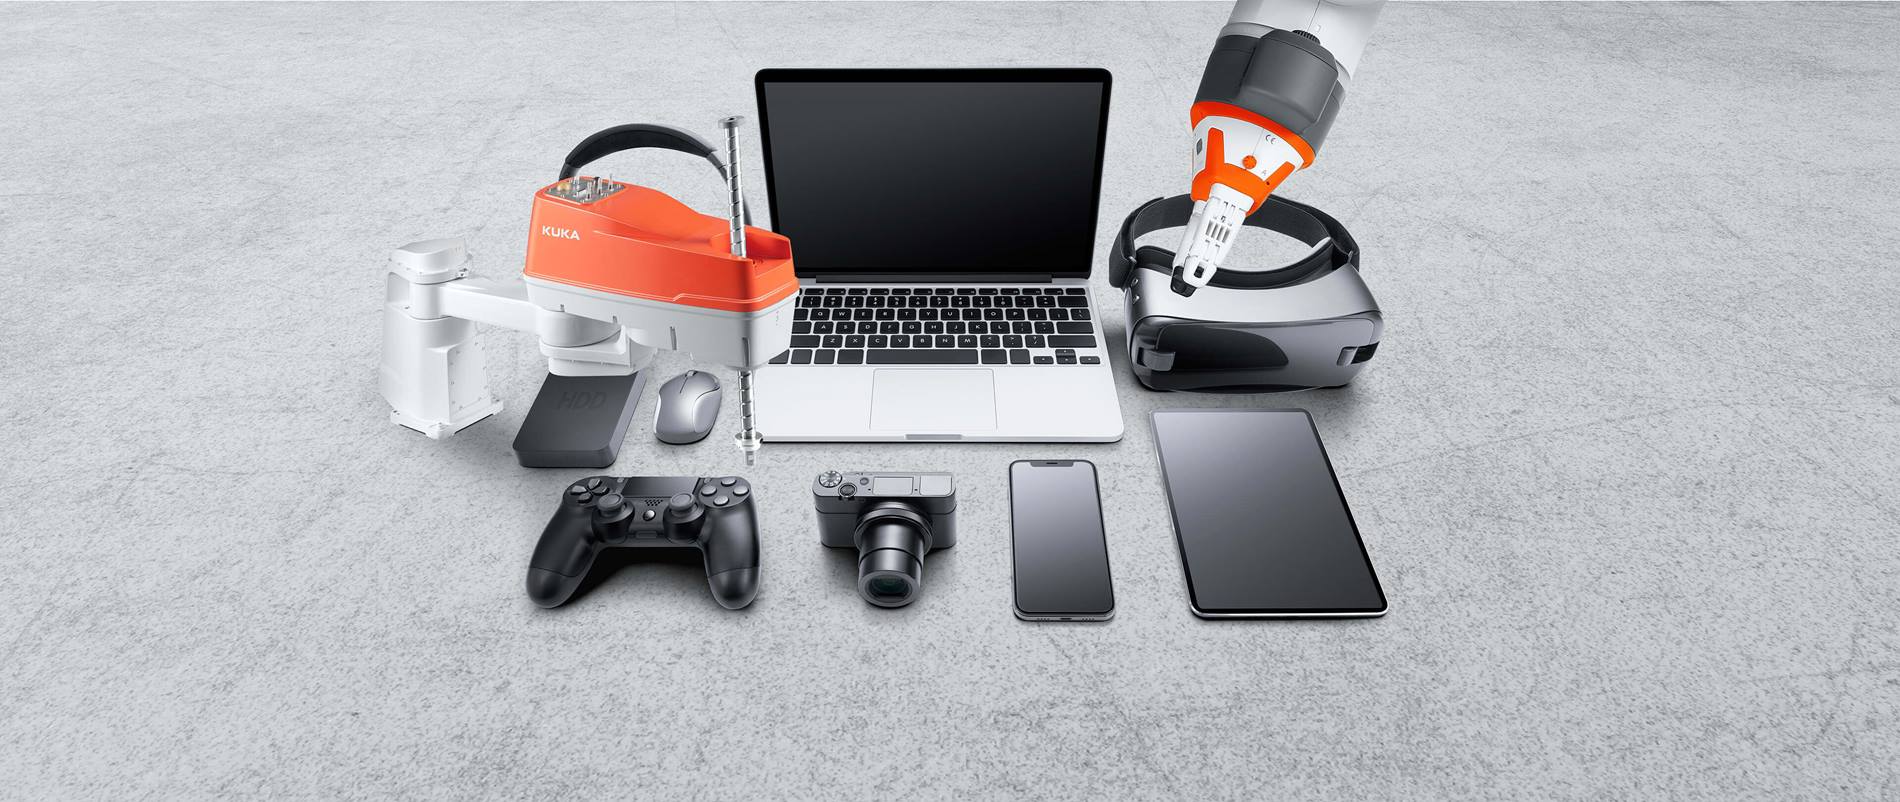 Verschiedene Geräte der Unterhaltungselektronik wie Kopfhörer, Laptop, Digitalkamera, Handy, Tablet, VR-Brille, Maus, externe Festplatte, Spielkonsole und zwei KUKA Roboter